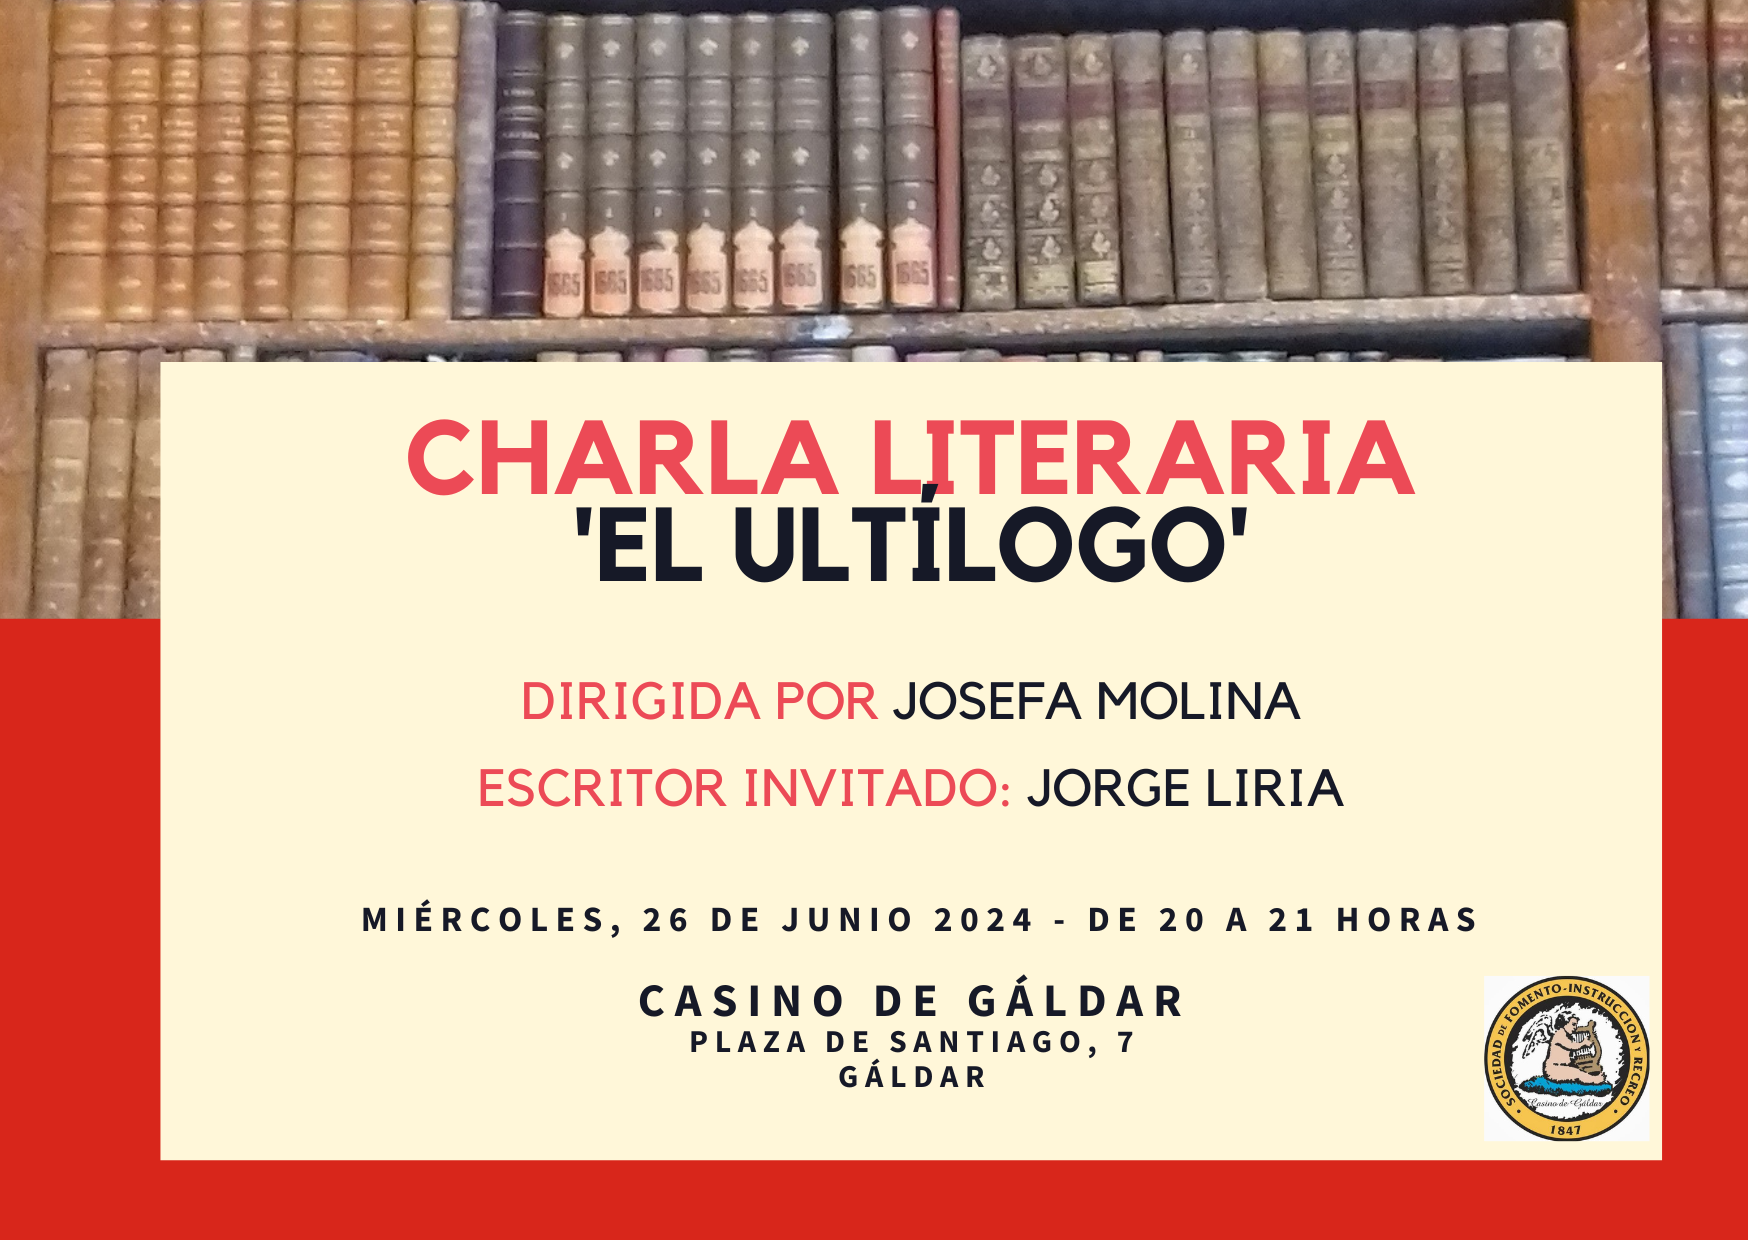 El escritor y editor Jorge Liria invitado a la la charla literaria ‘El Ultílogo’